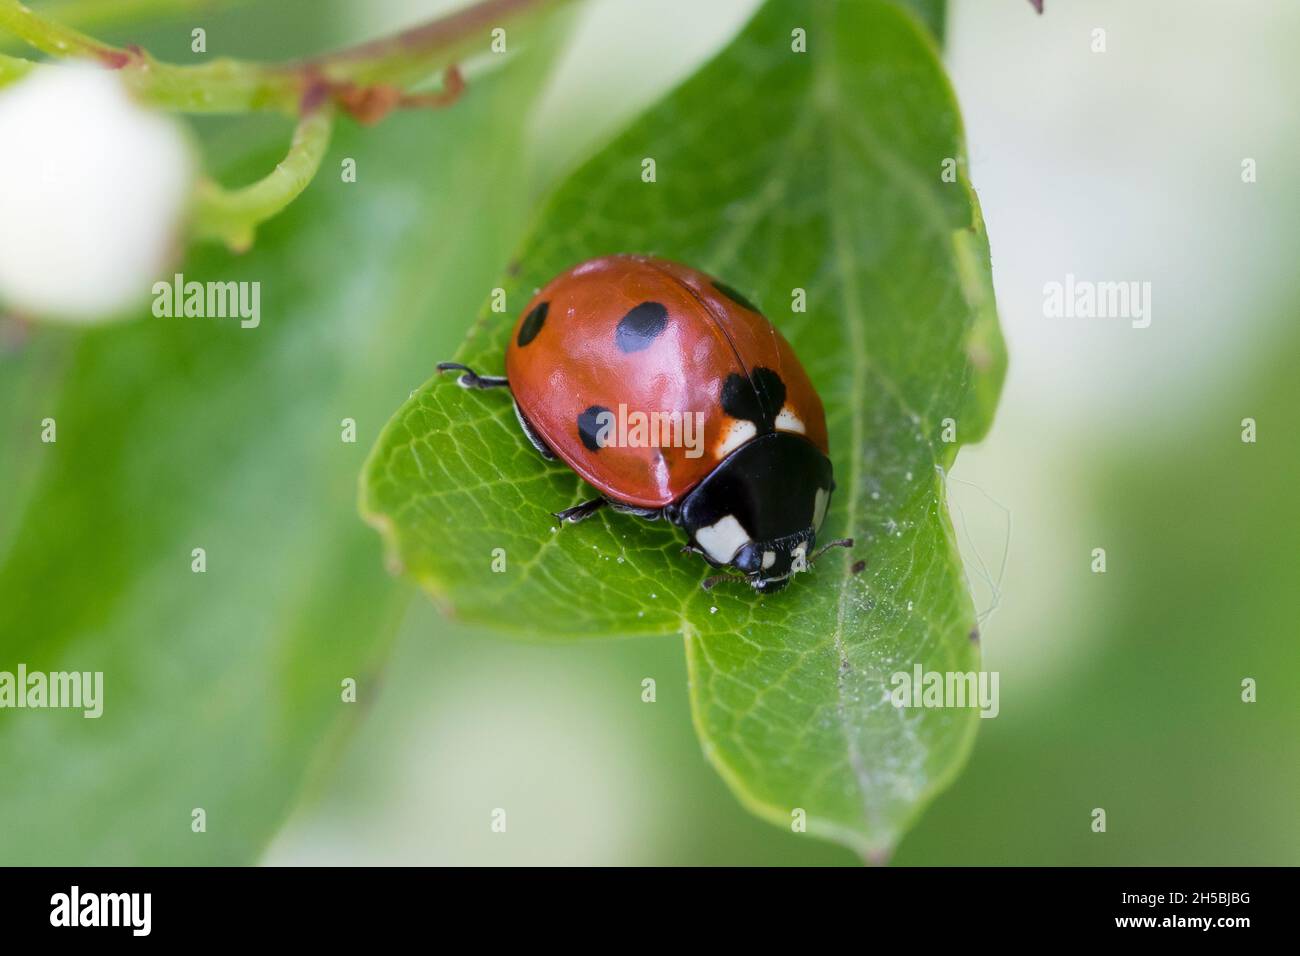 Siebenpunkt-Marienkäfer, Siebenpunkt, Marienkäfer, 7-Punkt, 7-Punkt-Marienkäfer, Coccinella septempunctata, seven-spot ladybird, sevenspot ladybird, 7 Stock Photo